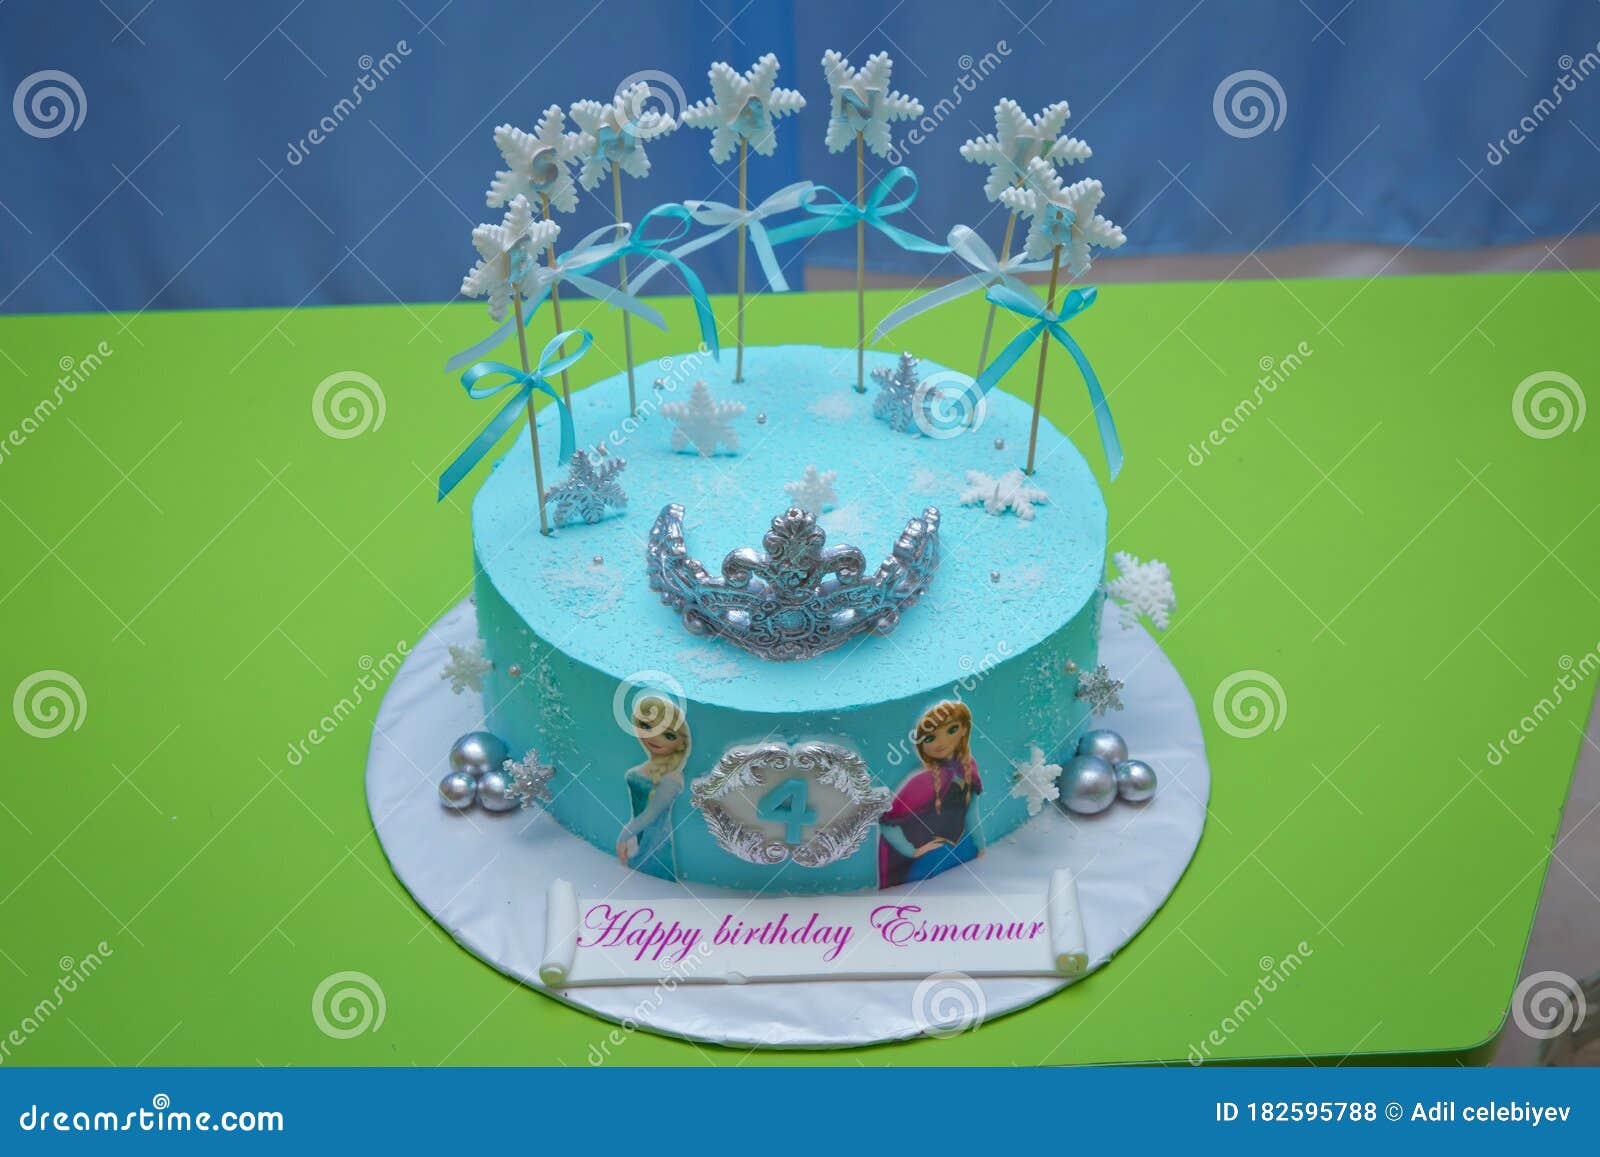 Disney Frozen Cake. Kids Birthday .Frozen Themed Child`s Birthday ...